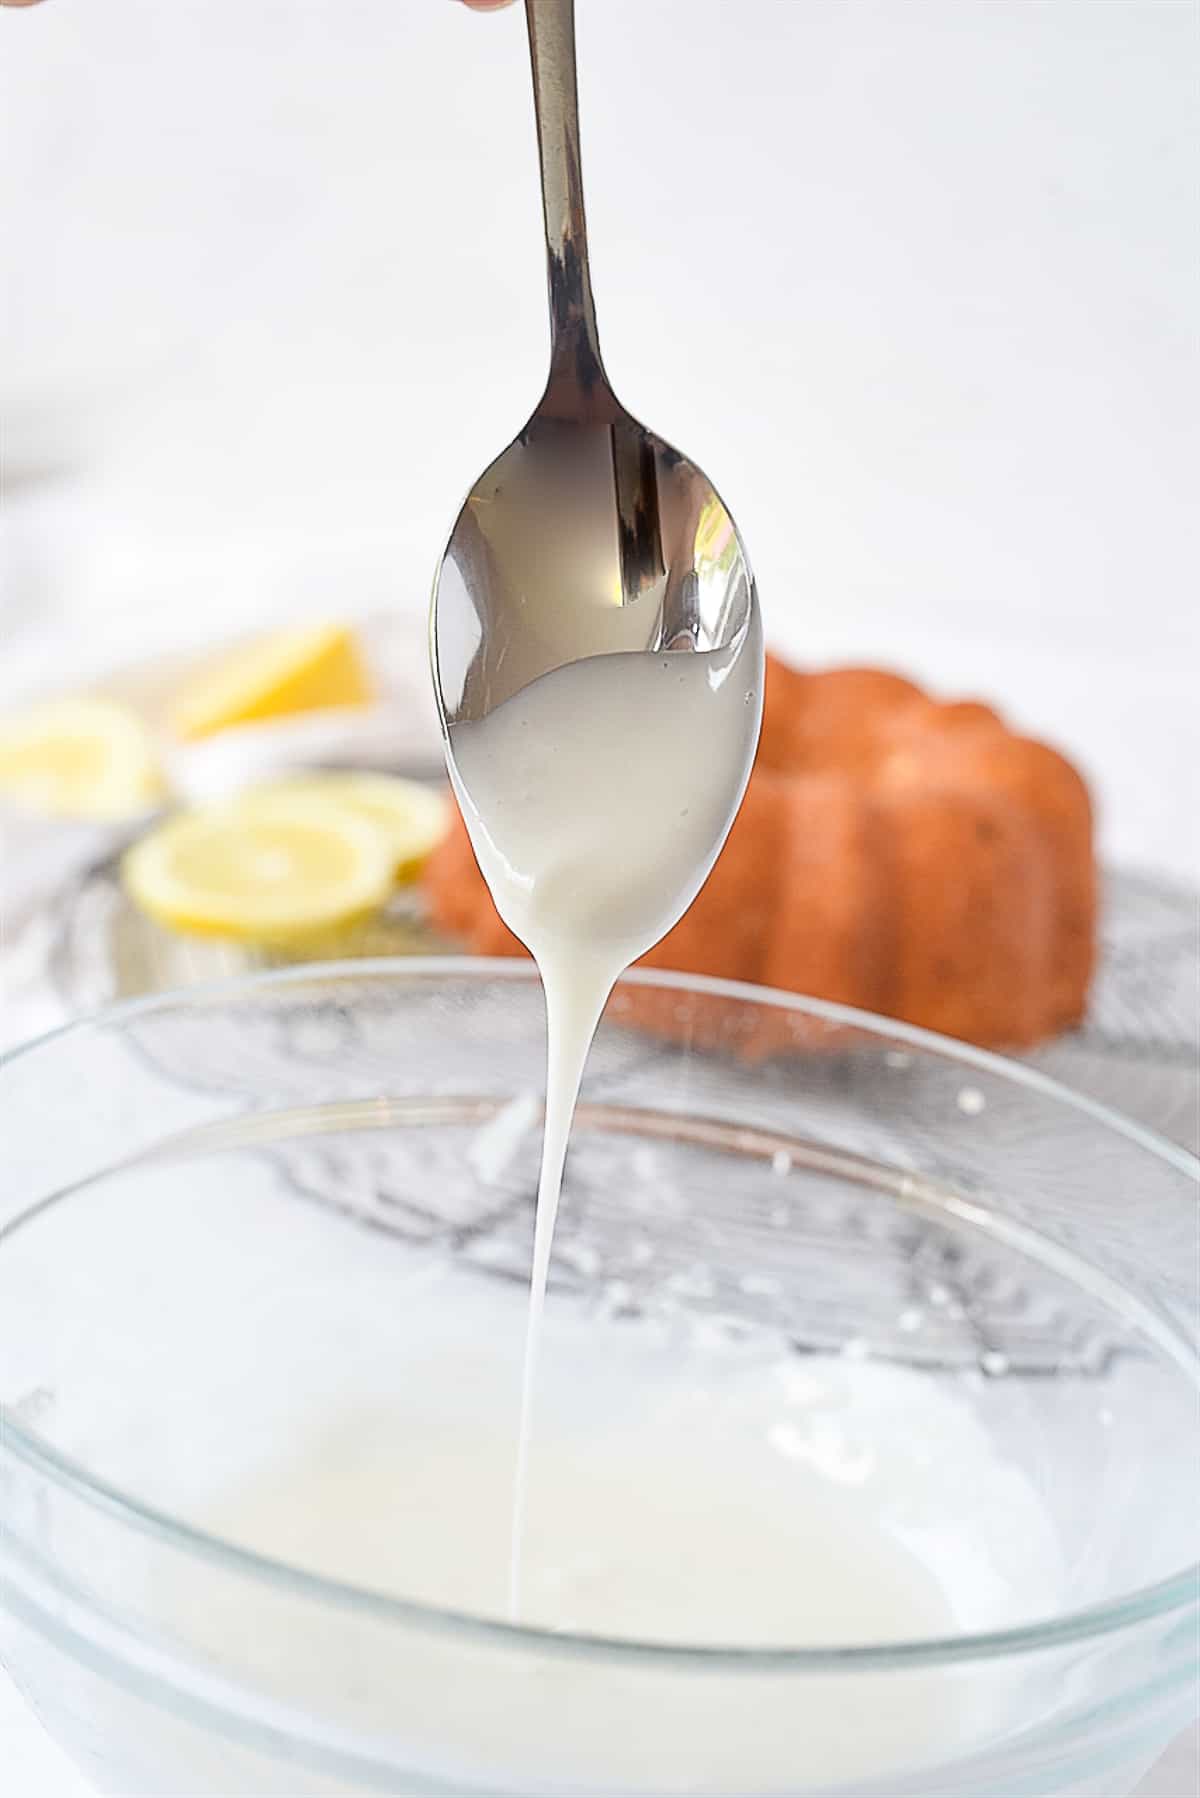 lemon glaze on a spoon